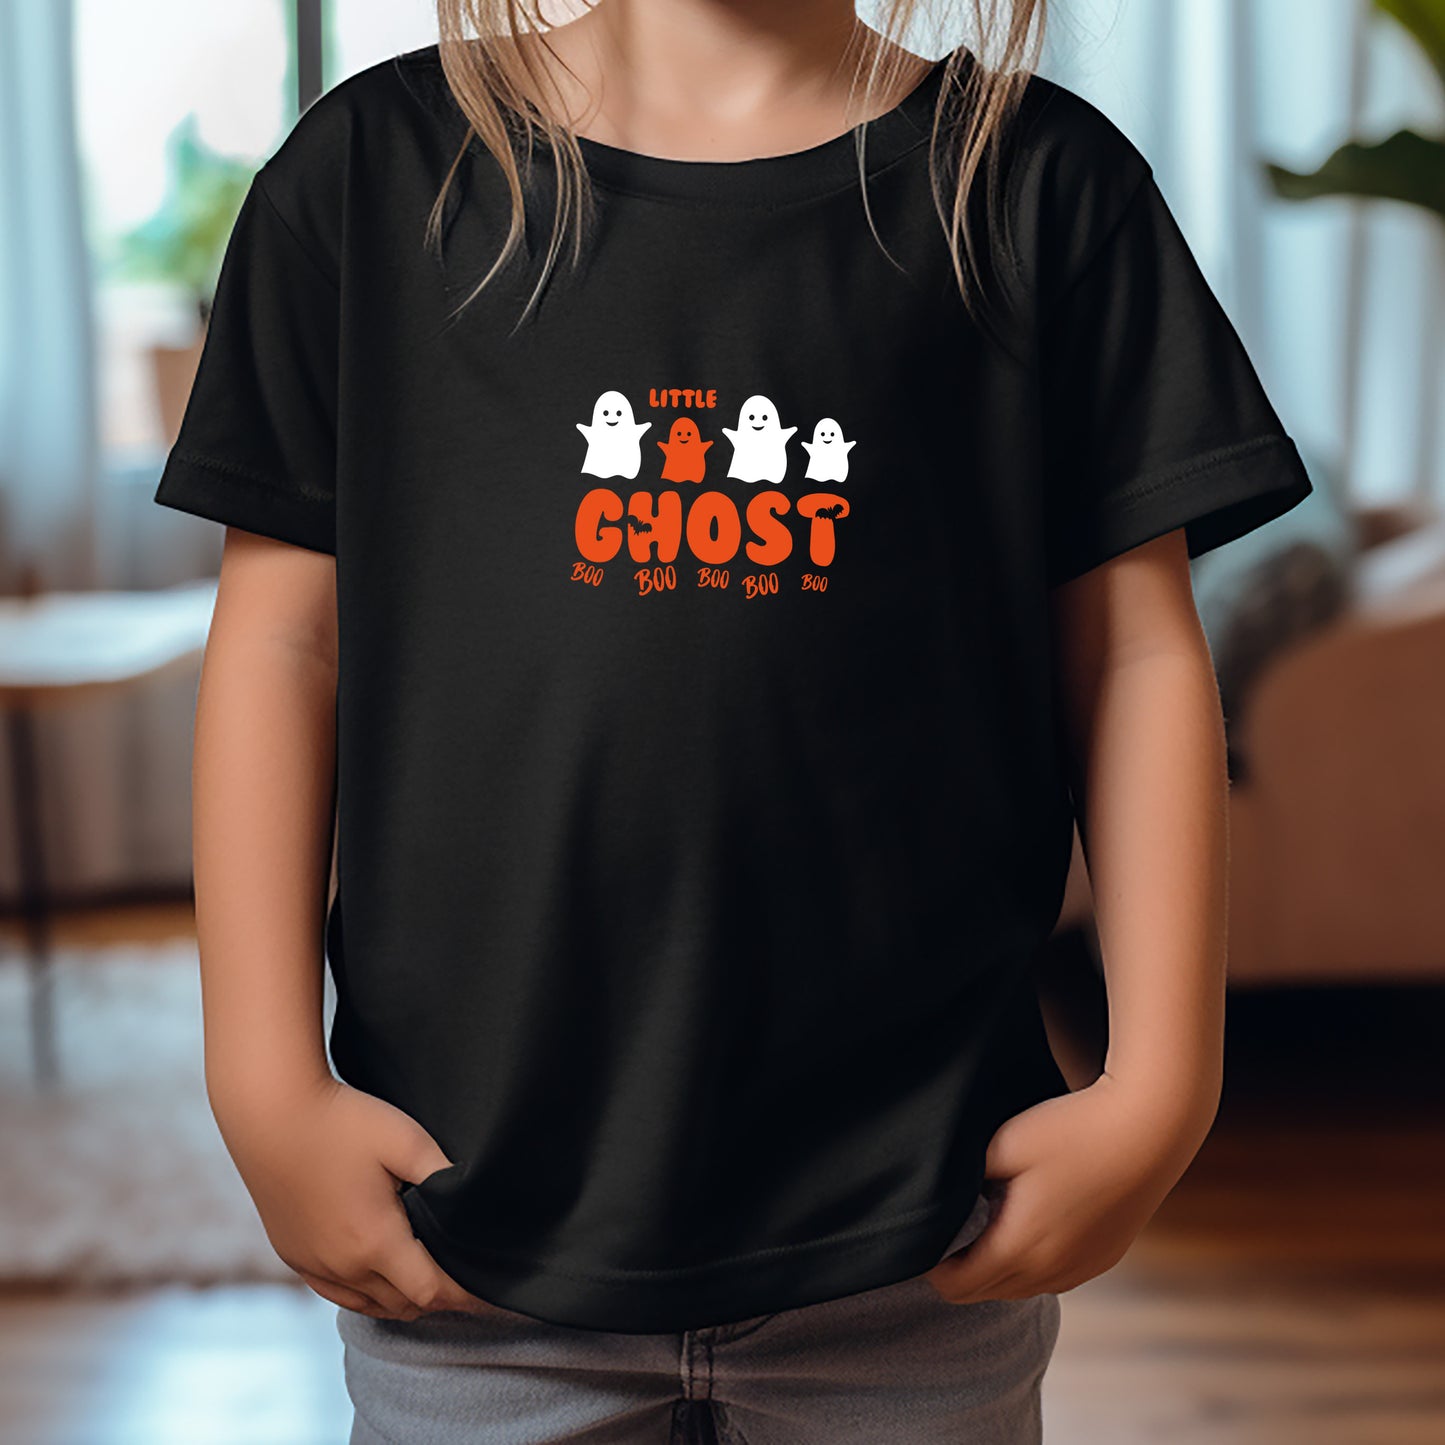 Little Ghost Kids T-Shirt (Girl & Boy Fits)